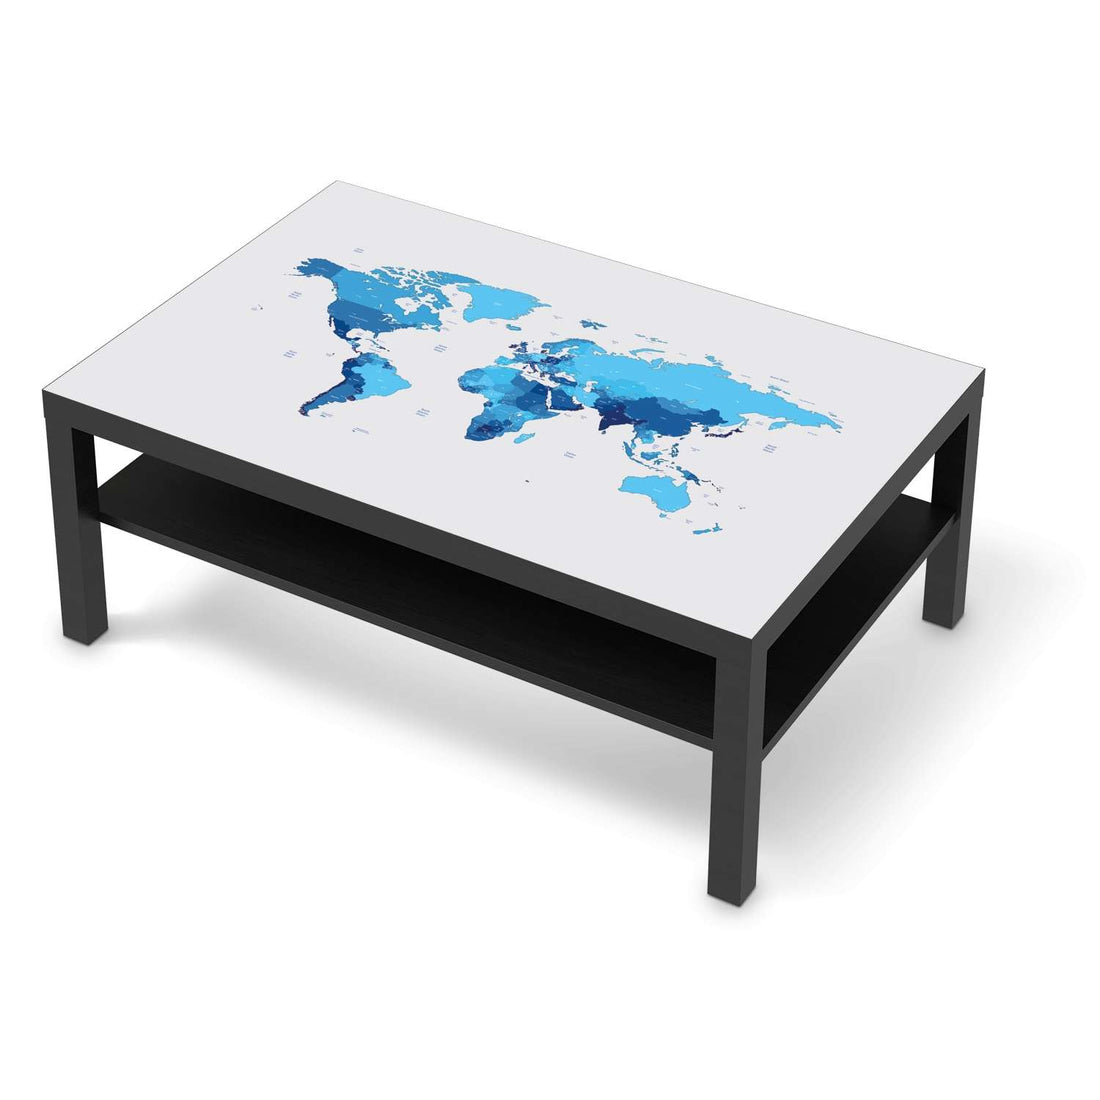 Klebefolie Politische Weltkarte - IKEA Lack Tisch 118x78 cm - schwarz